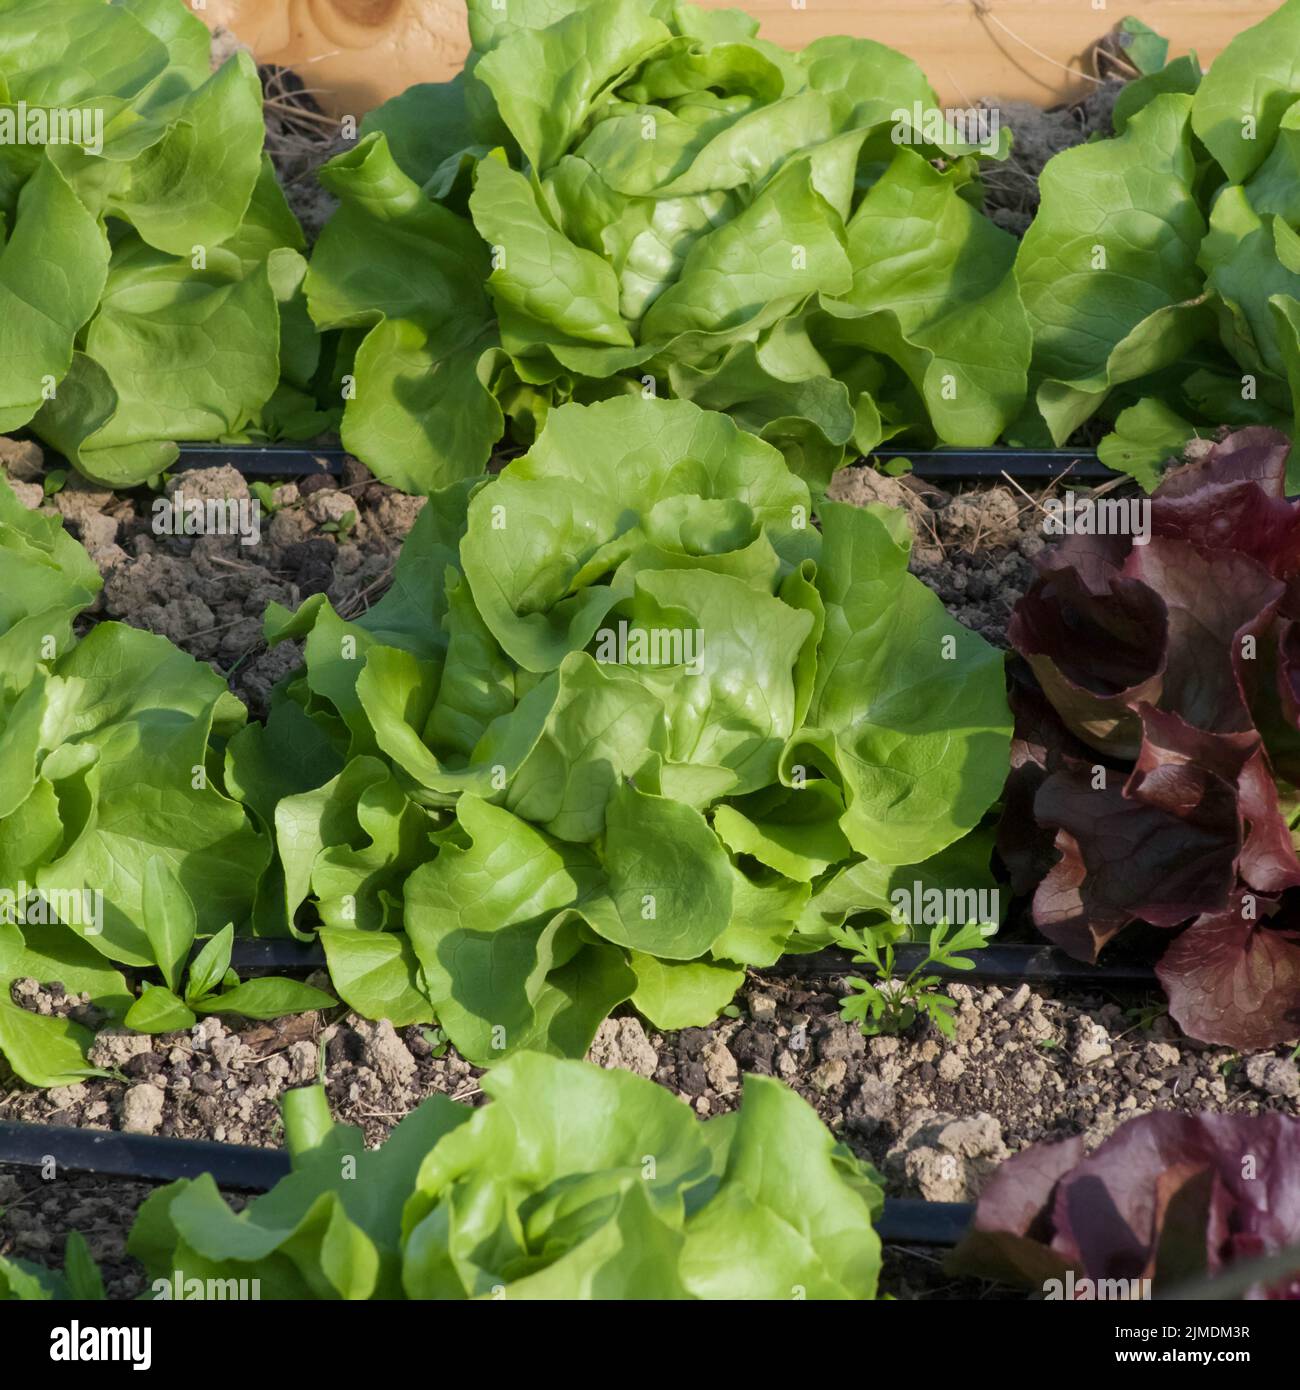 Rows of spring butter lettuce in garden soil Stock Photo